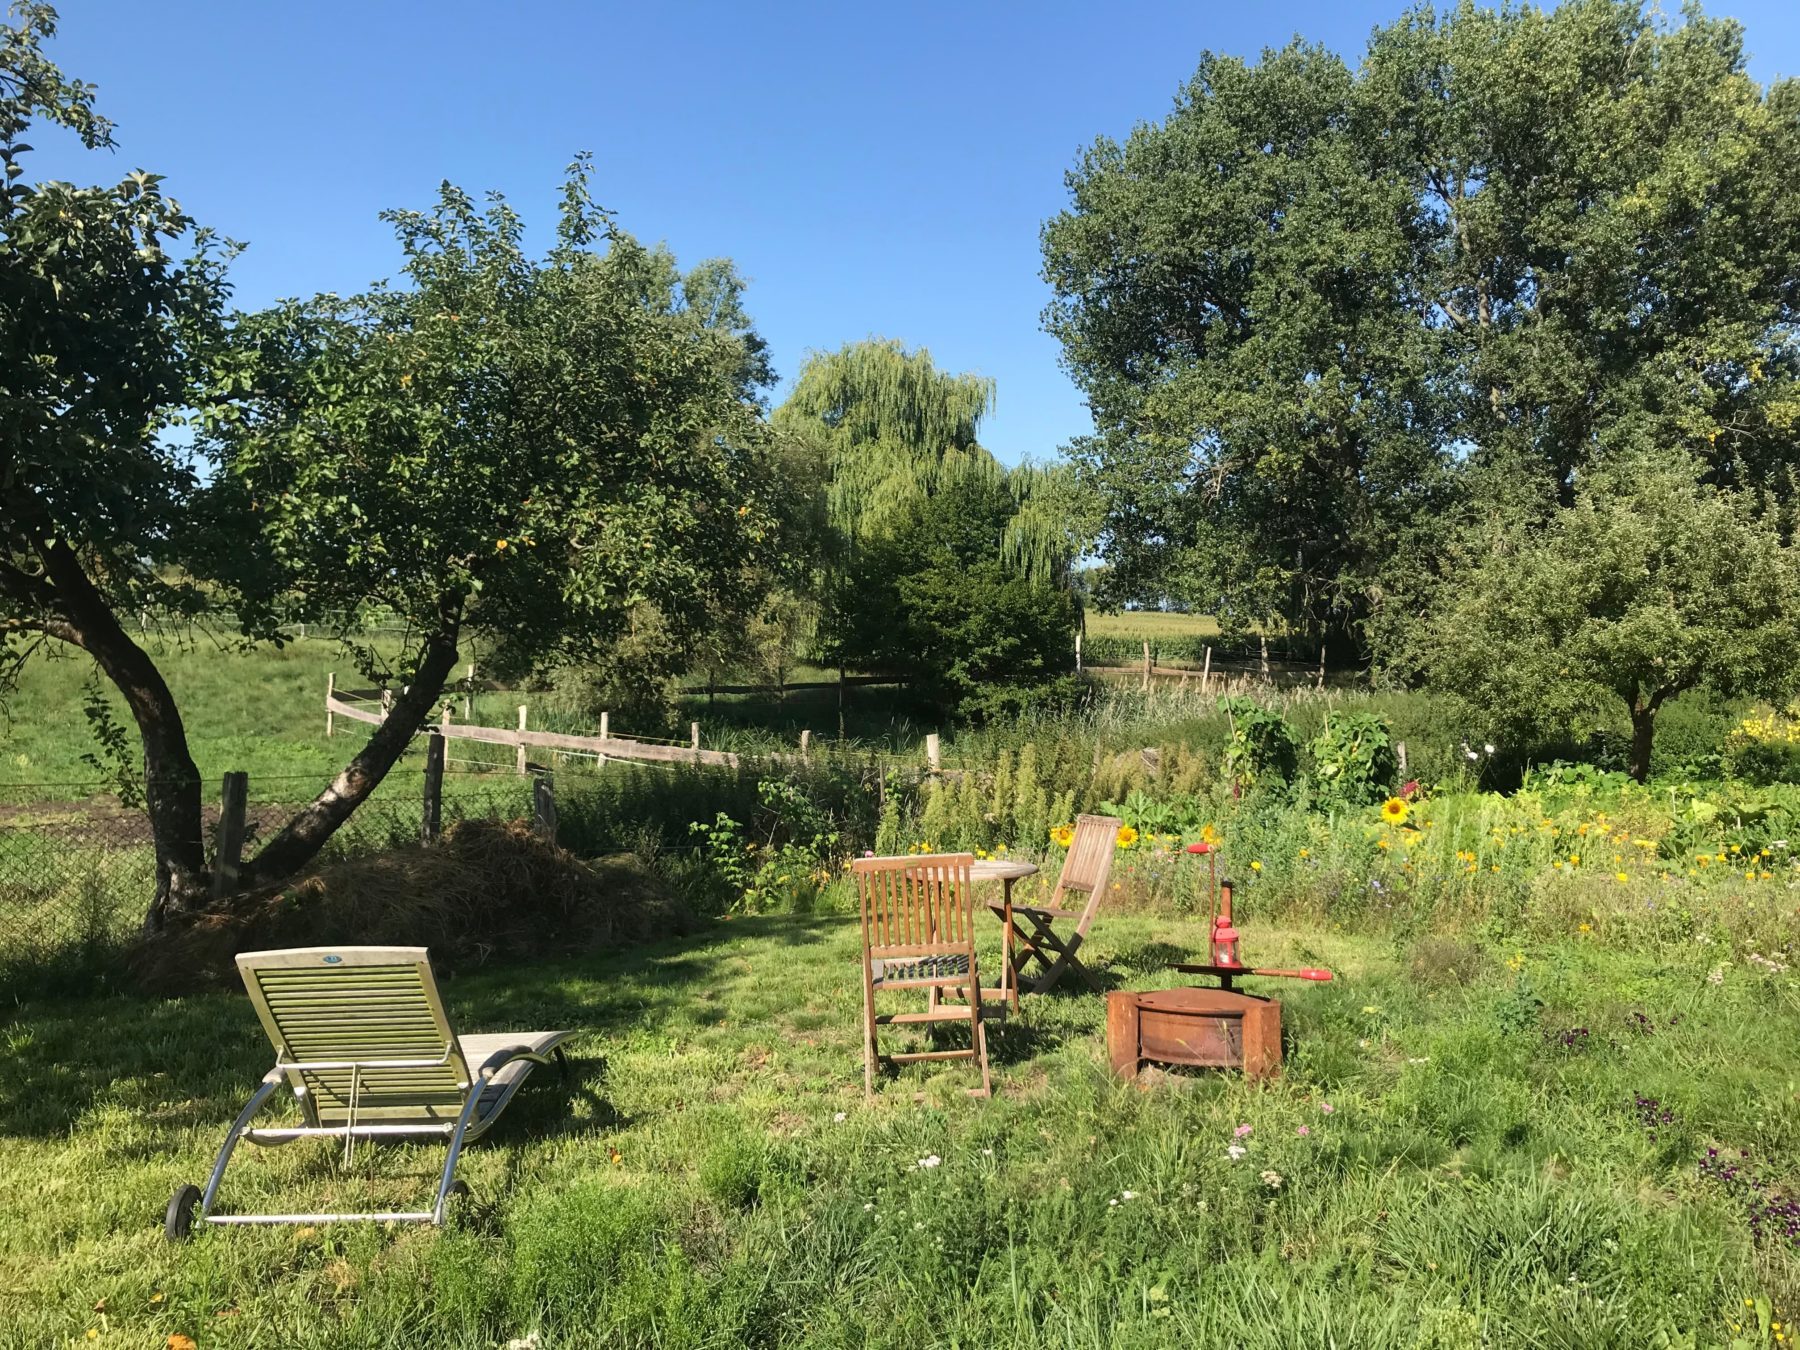 Gartenstühle und ein Liegestühl stehen in einer grünen Landschaft mit Obstbäumen